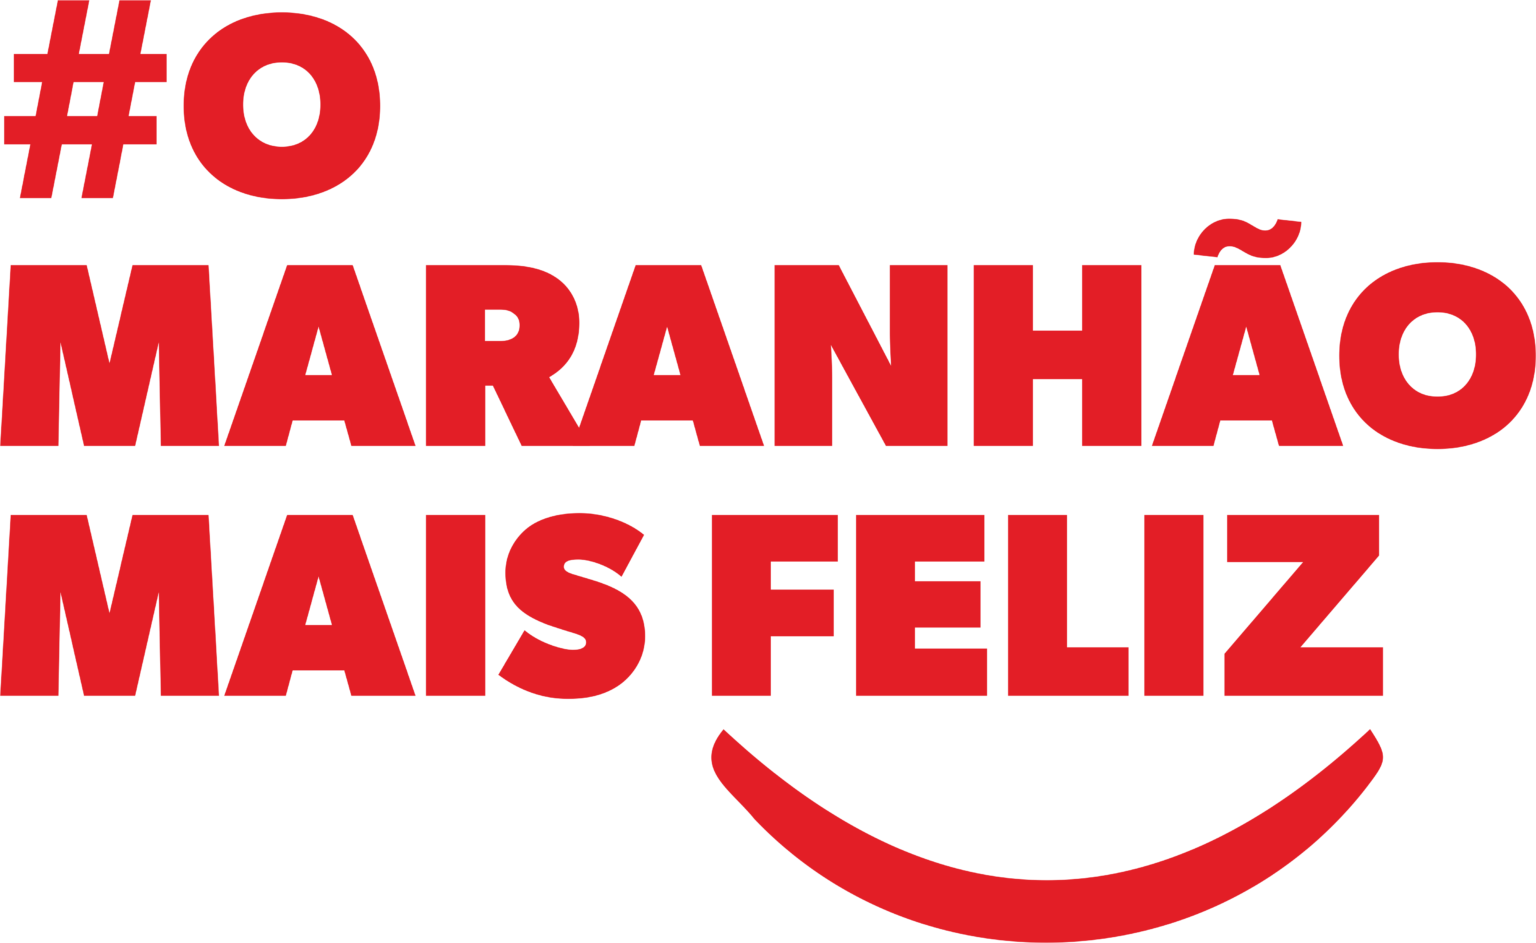 https://wevertonrocha.com.br/wp-content/uploads/2021/08/logo-o-maranhao-1536x943.png